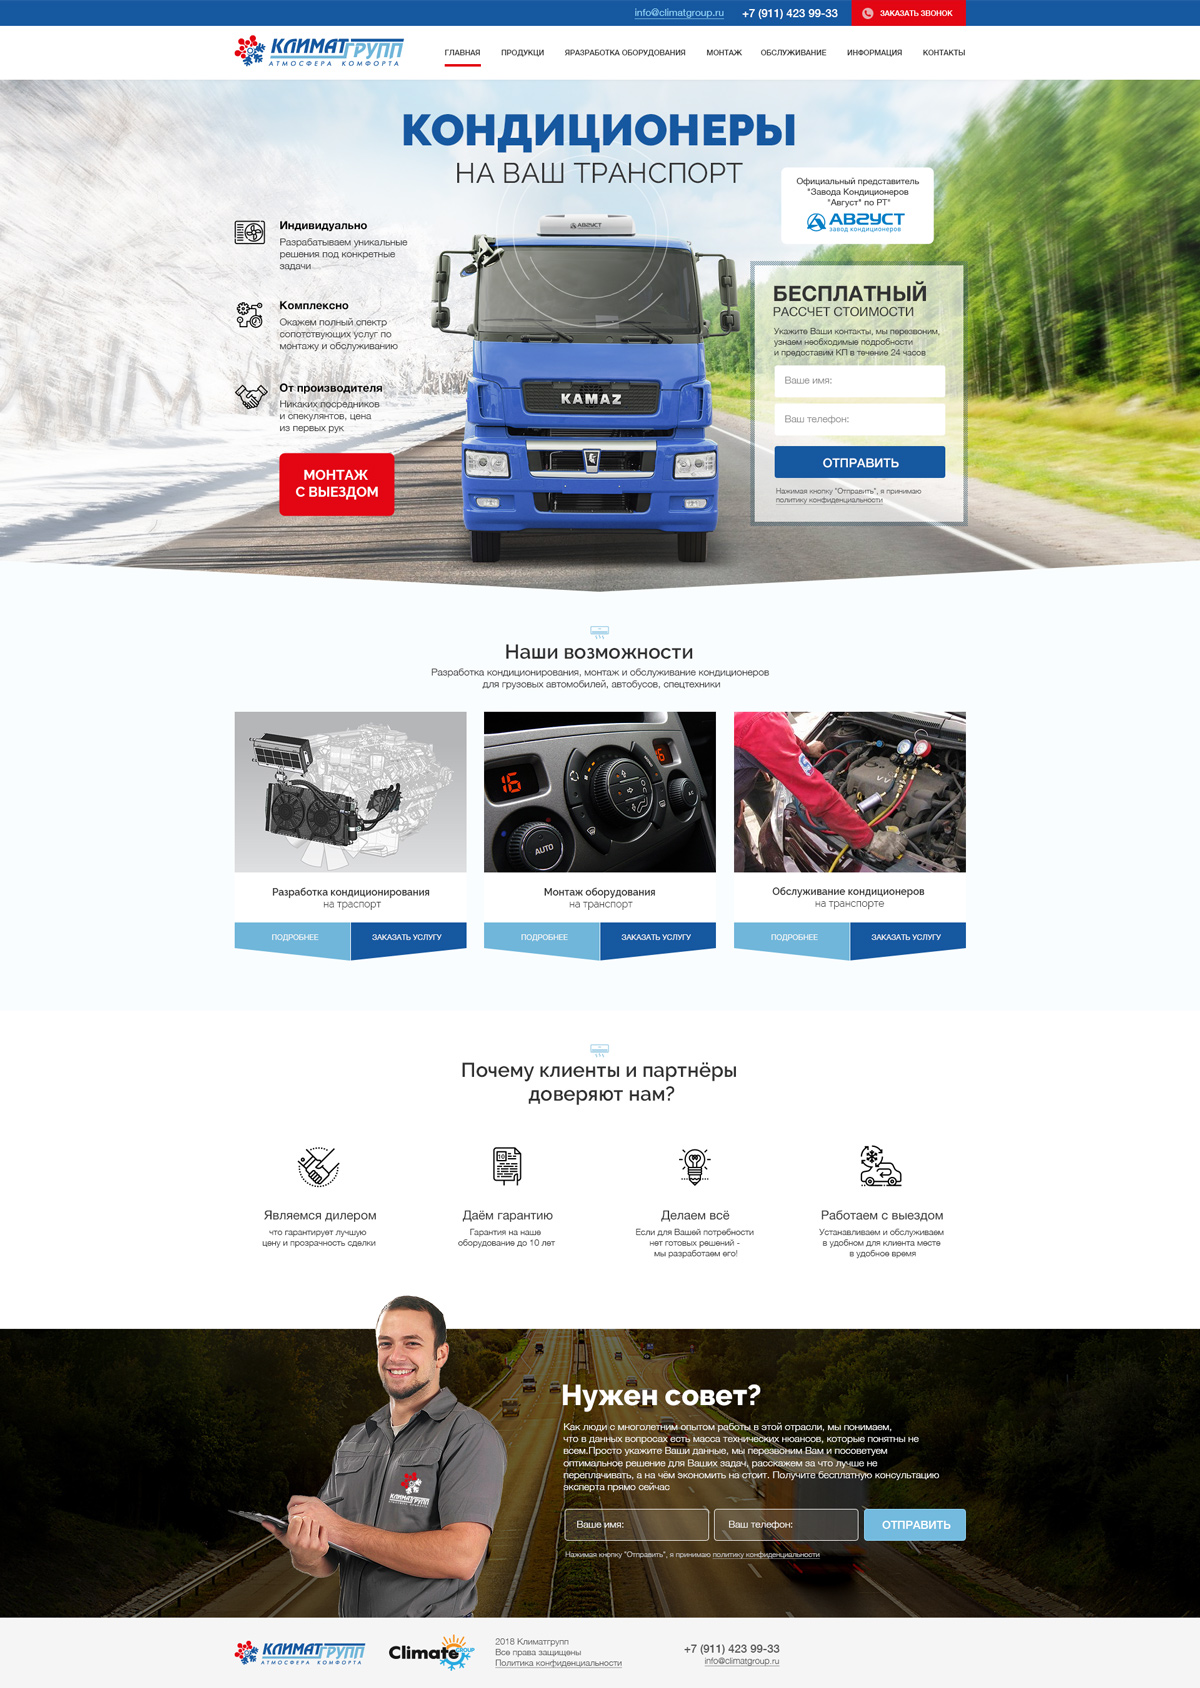 Automotive, Business card website PSD Template